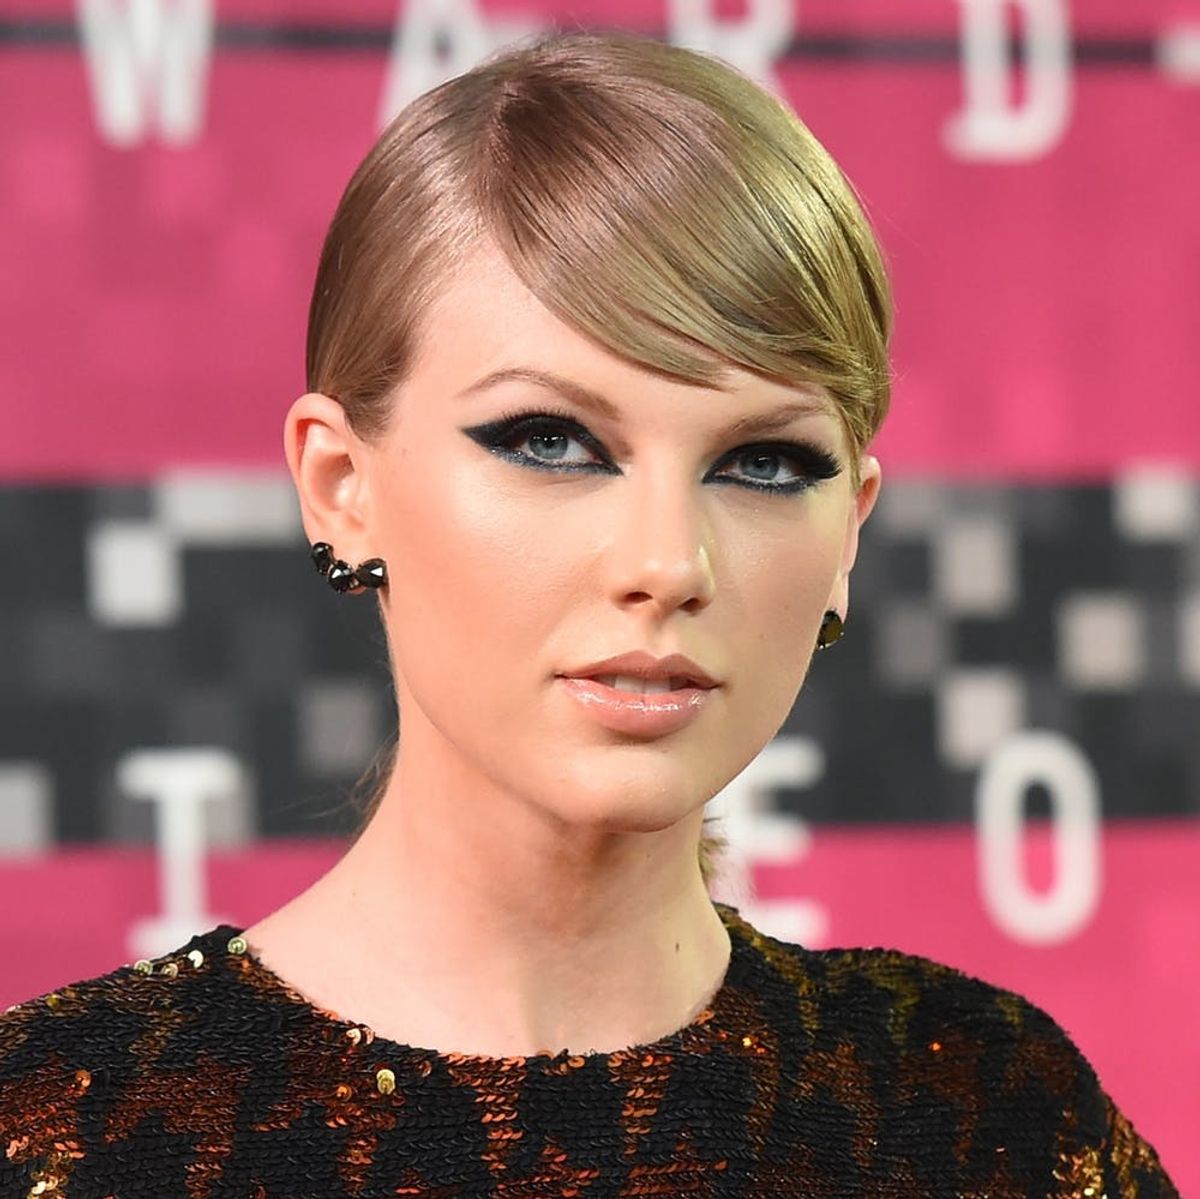 The REAL Reason Why Taylor Swift Isn’t at the VMAs